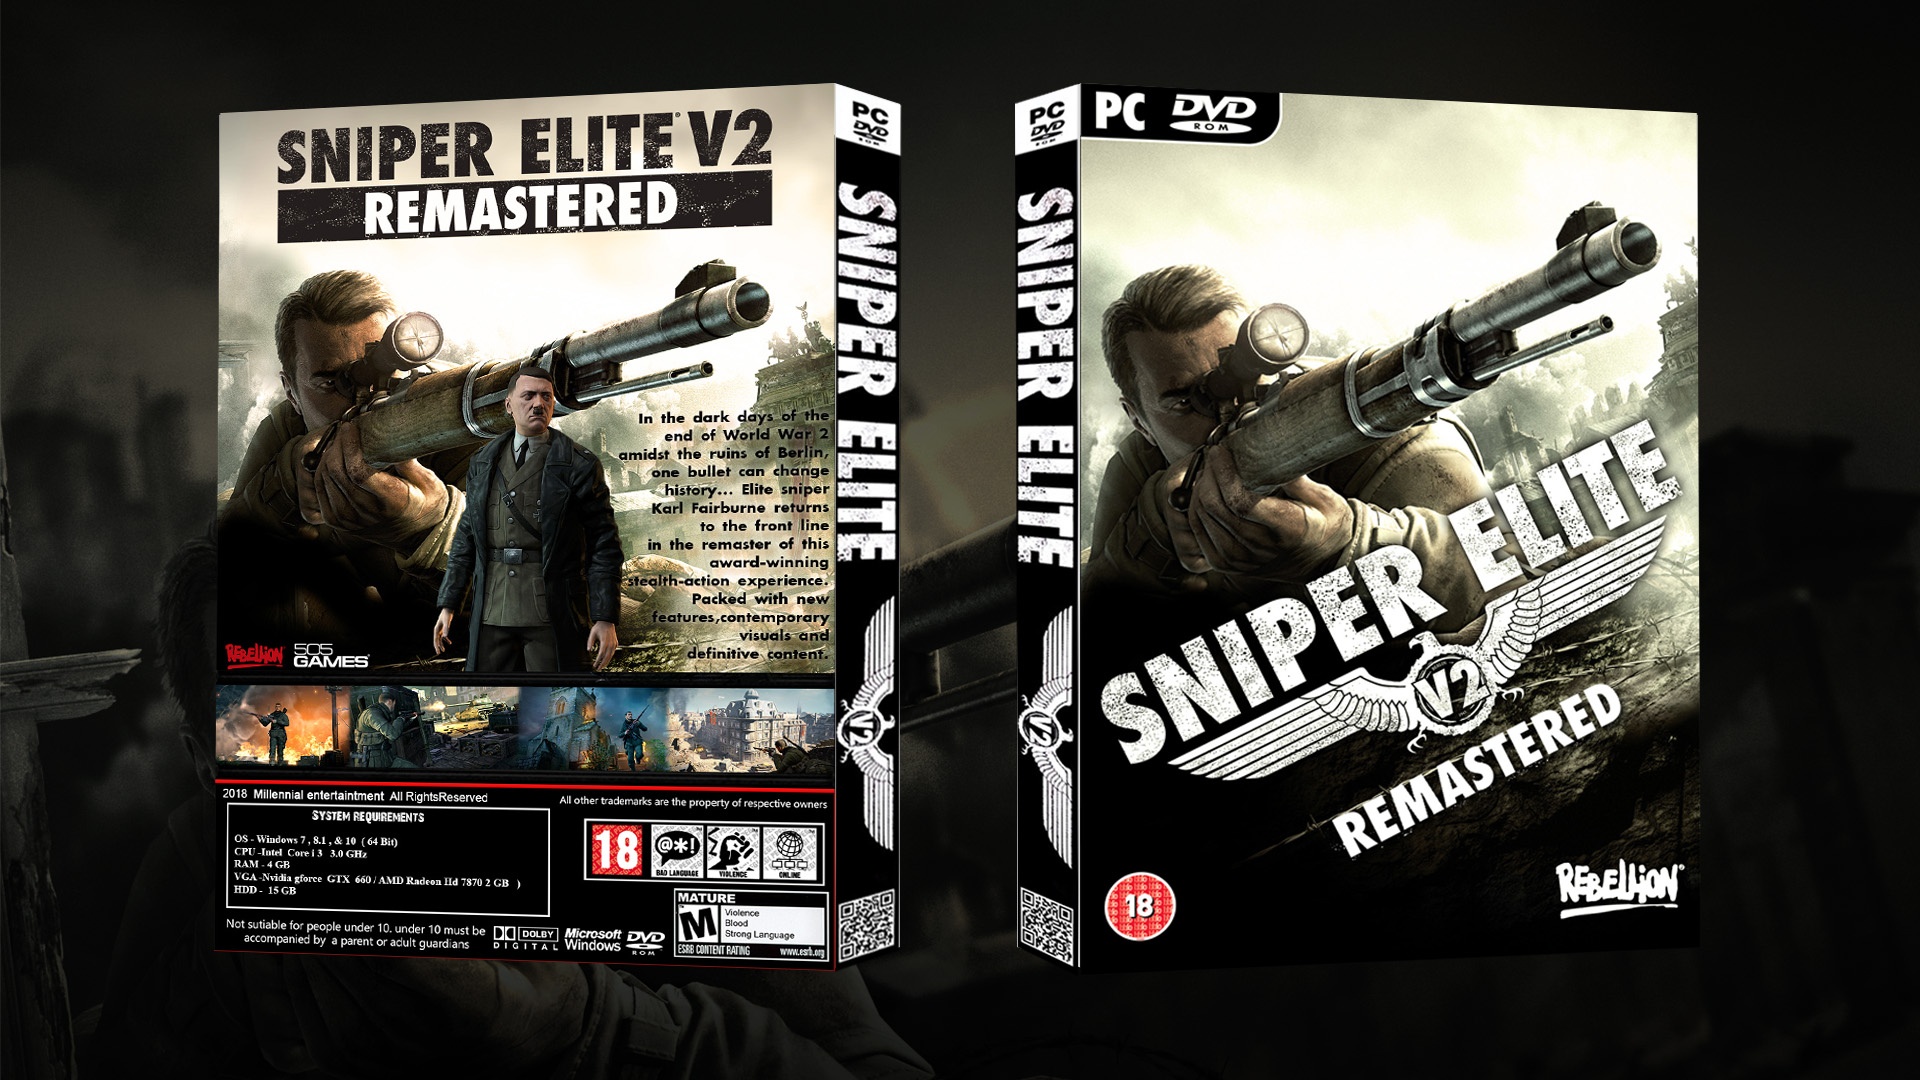 Sniper Elite V2 Remastered box cover